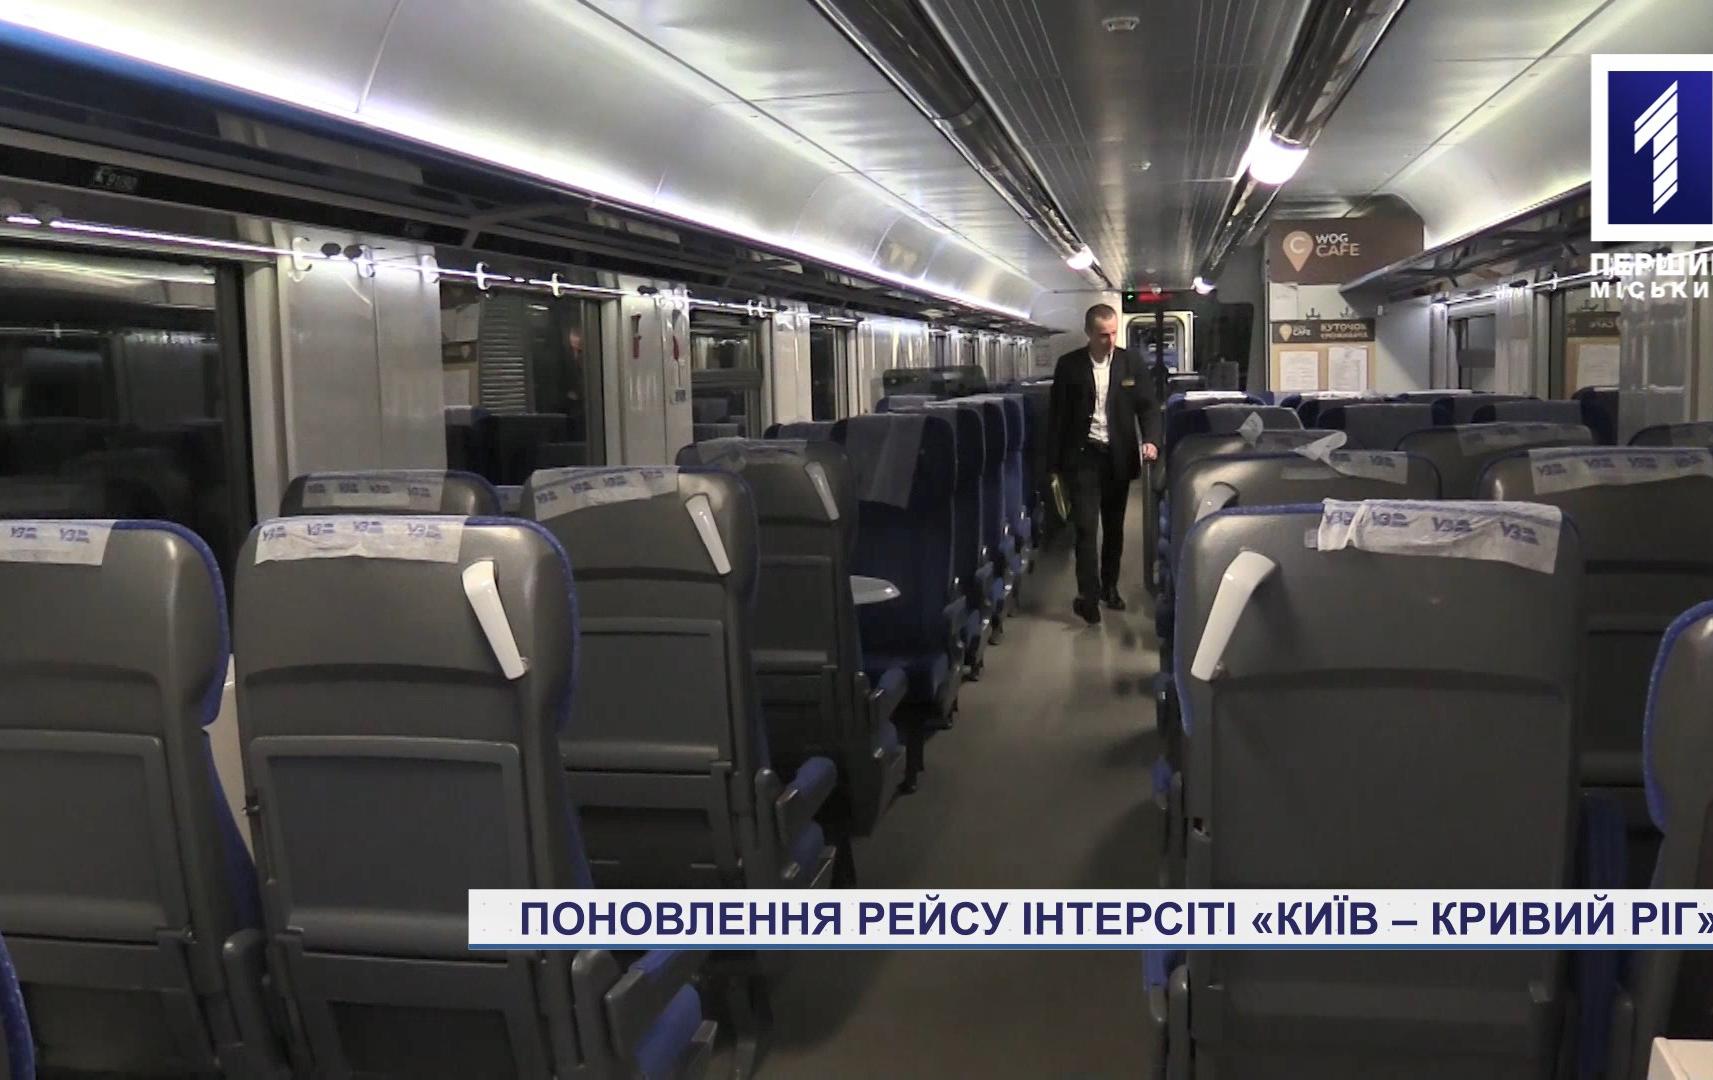 Поновлення рейсу інтерсіті «Київ – Кривий Ріг»